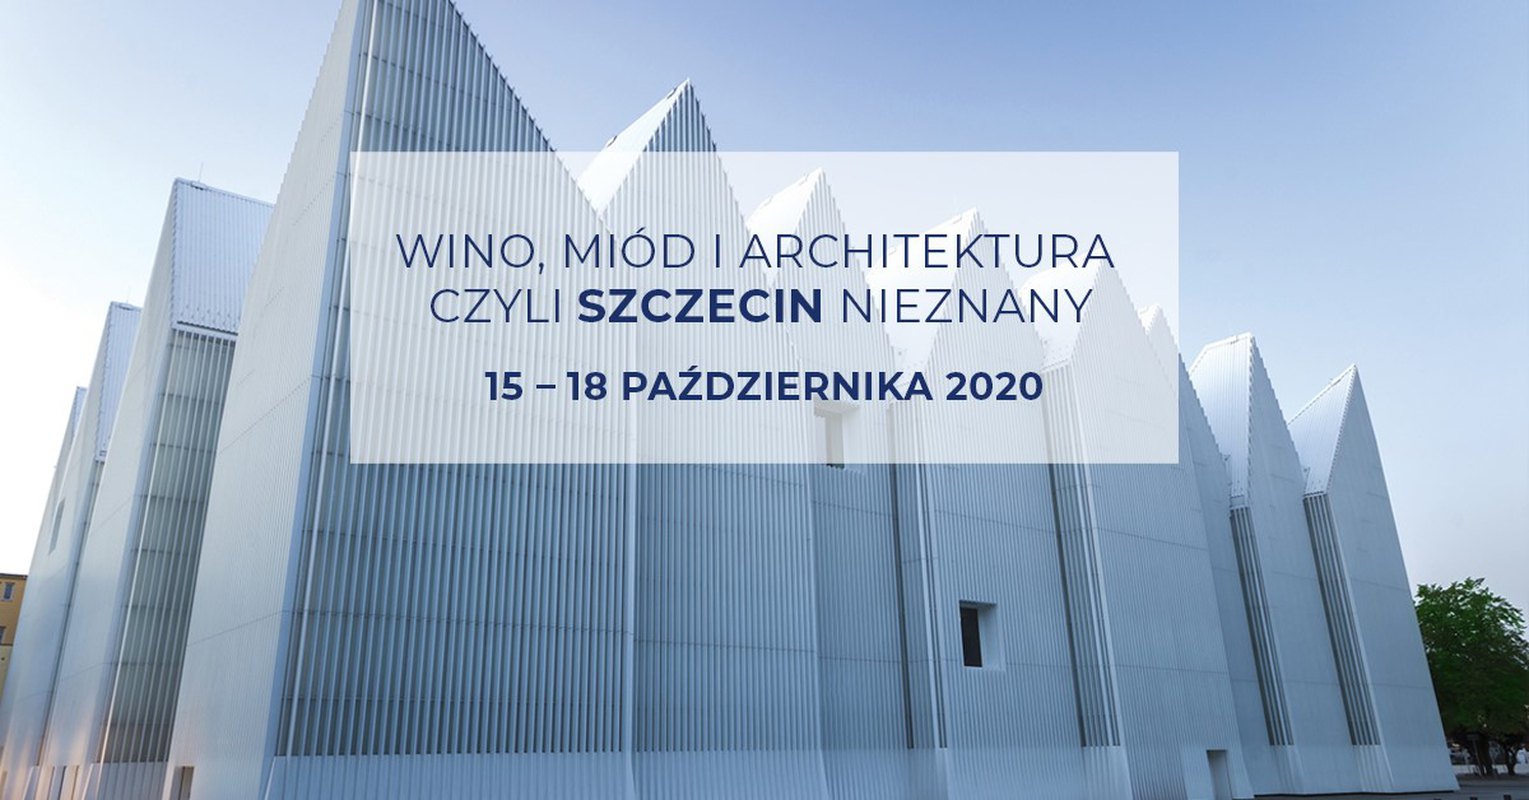 Wino, miód i architektura czyli Szczecin nieznany